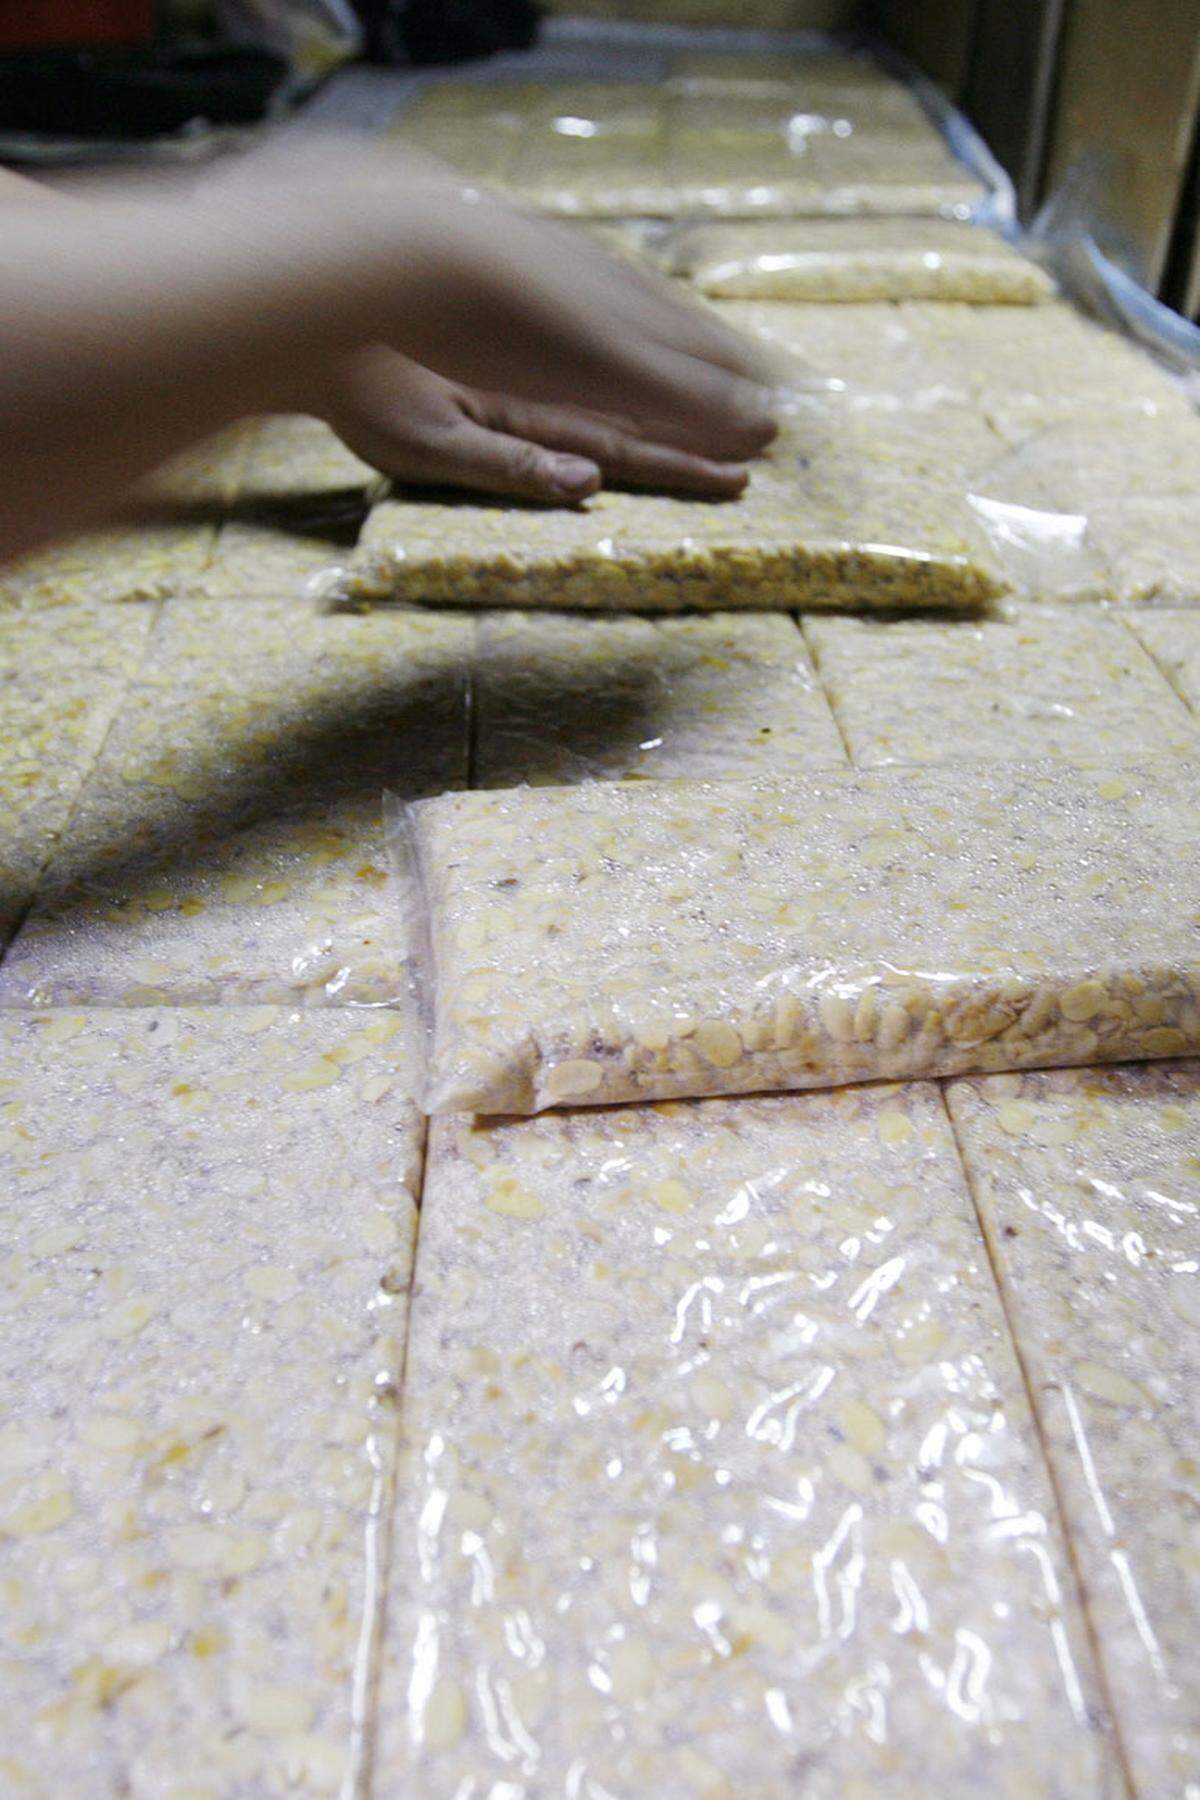 Die pflanzlichen Varianten von Schnitzel und Knackwurst sind noch breiter aufgestellt. Tempeh ist ein besonders gesunder pflanzlicher Eiweißträger. Die Basis für den nussig-pilzig schmeckenden Tempeh bilden wie bei Tofu Sojabohnen. In der Herstellung werden die Sojabohnen gekocht, geschält und anschließend mit einer Pilzkutur (Rhizopus) beimpft. Durch die Fementierung ist der Sojakuchen bekömmlicher als Tofu.